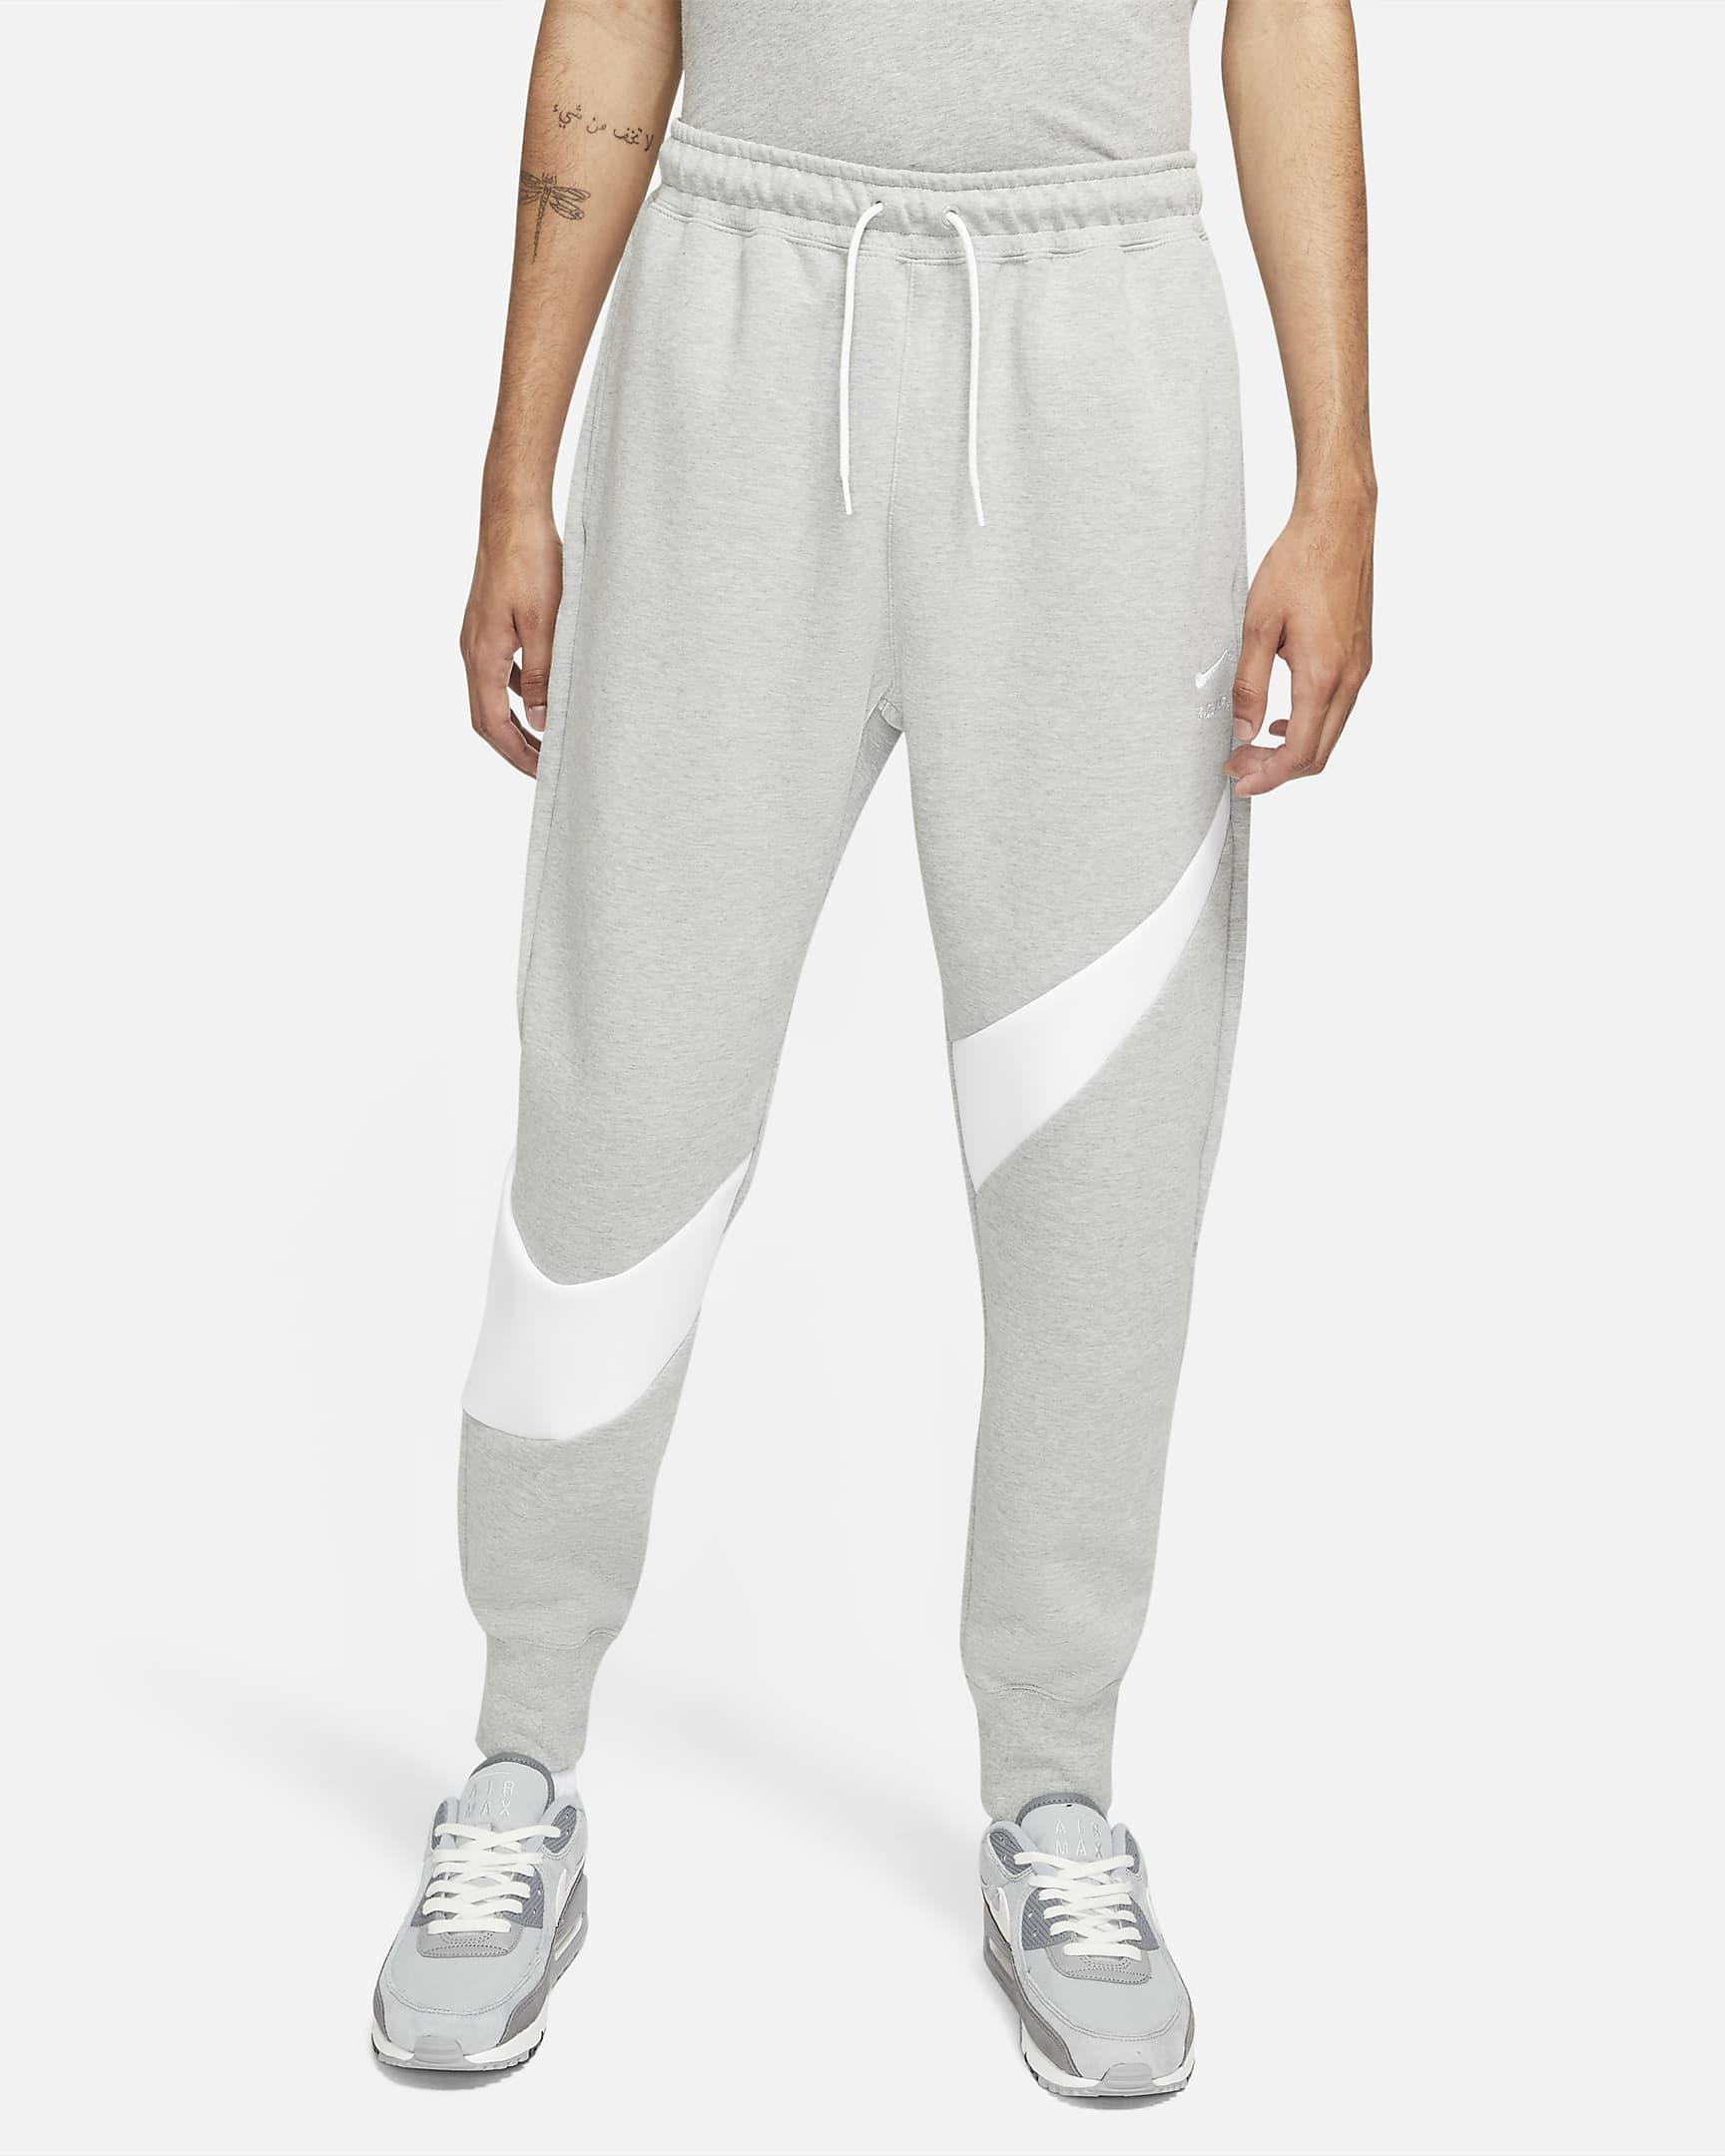 Nike Sportswear Swoosh Tech Fleece Pants in Dark Grey Heather,White,White  (Gray) for Men - Save 3% | Lyst